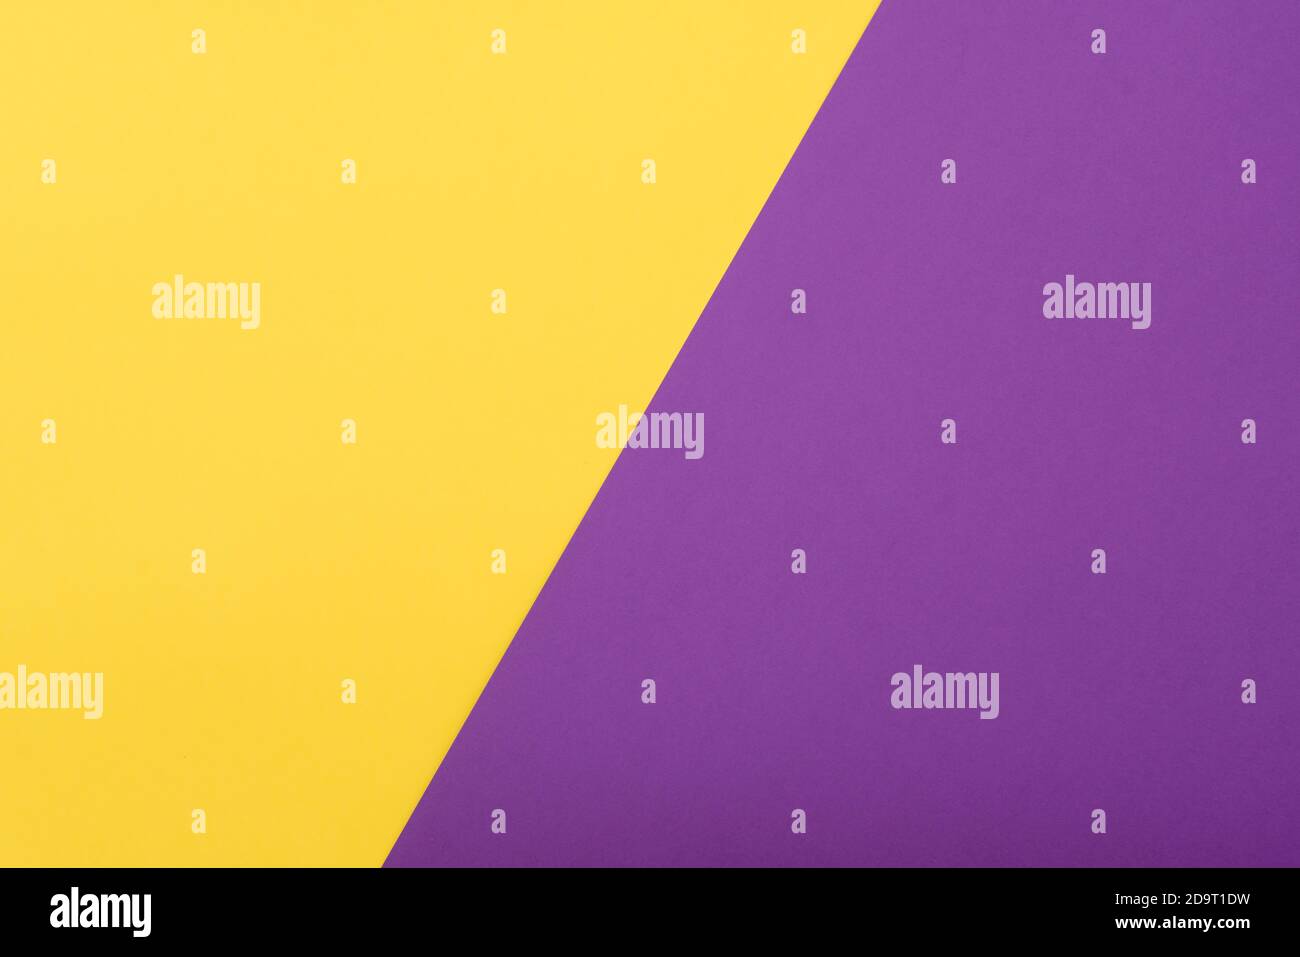 Modello cartaceo con spazio per testo, idee. Carta colorata gialla e viola, piatta Foto Stock